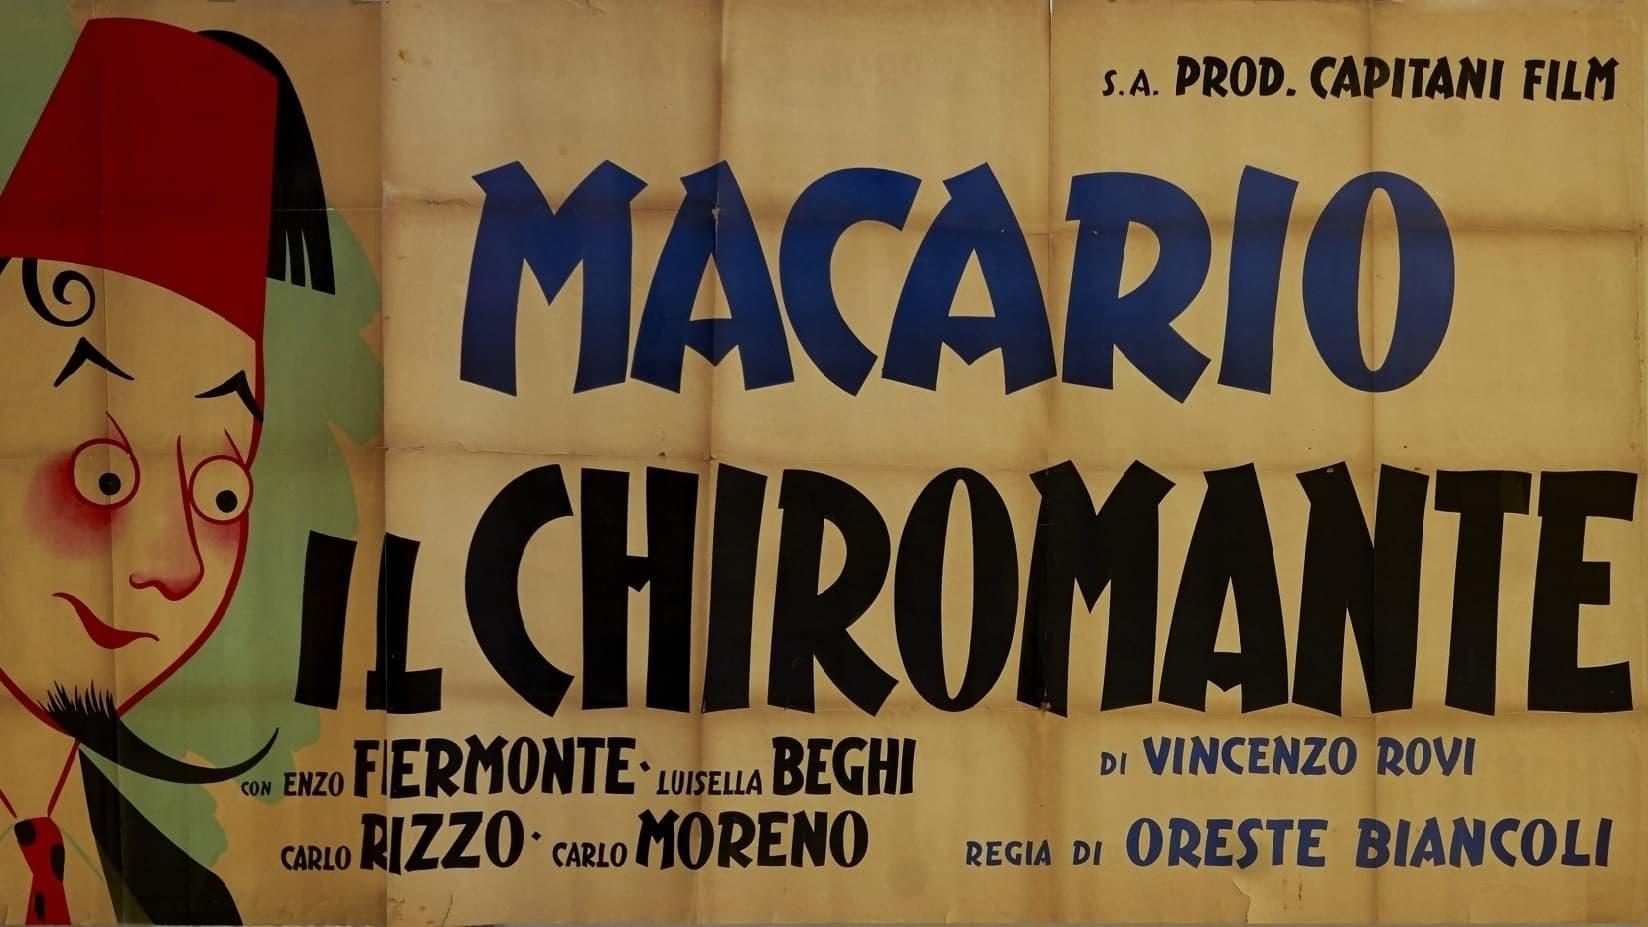 Mario Ancillotti backdrop